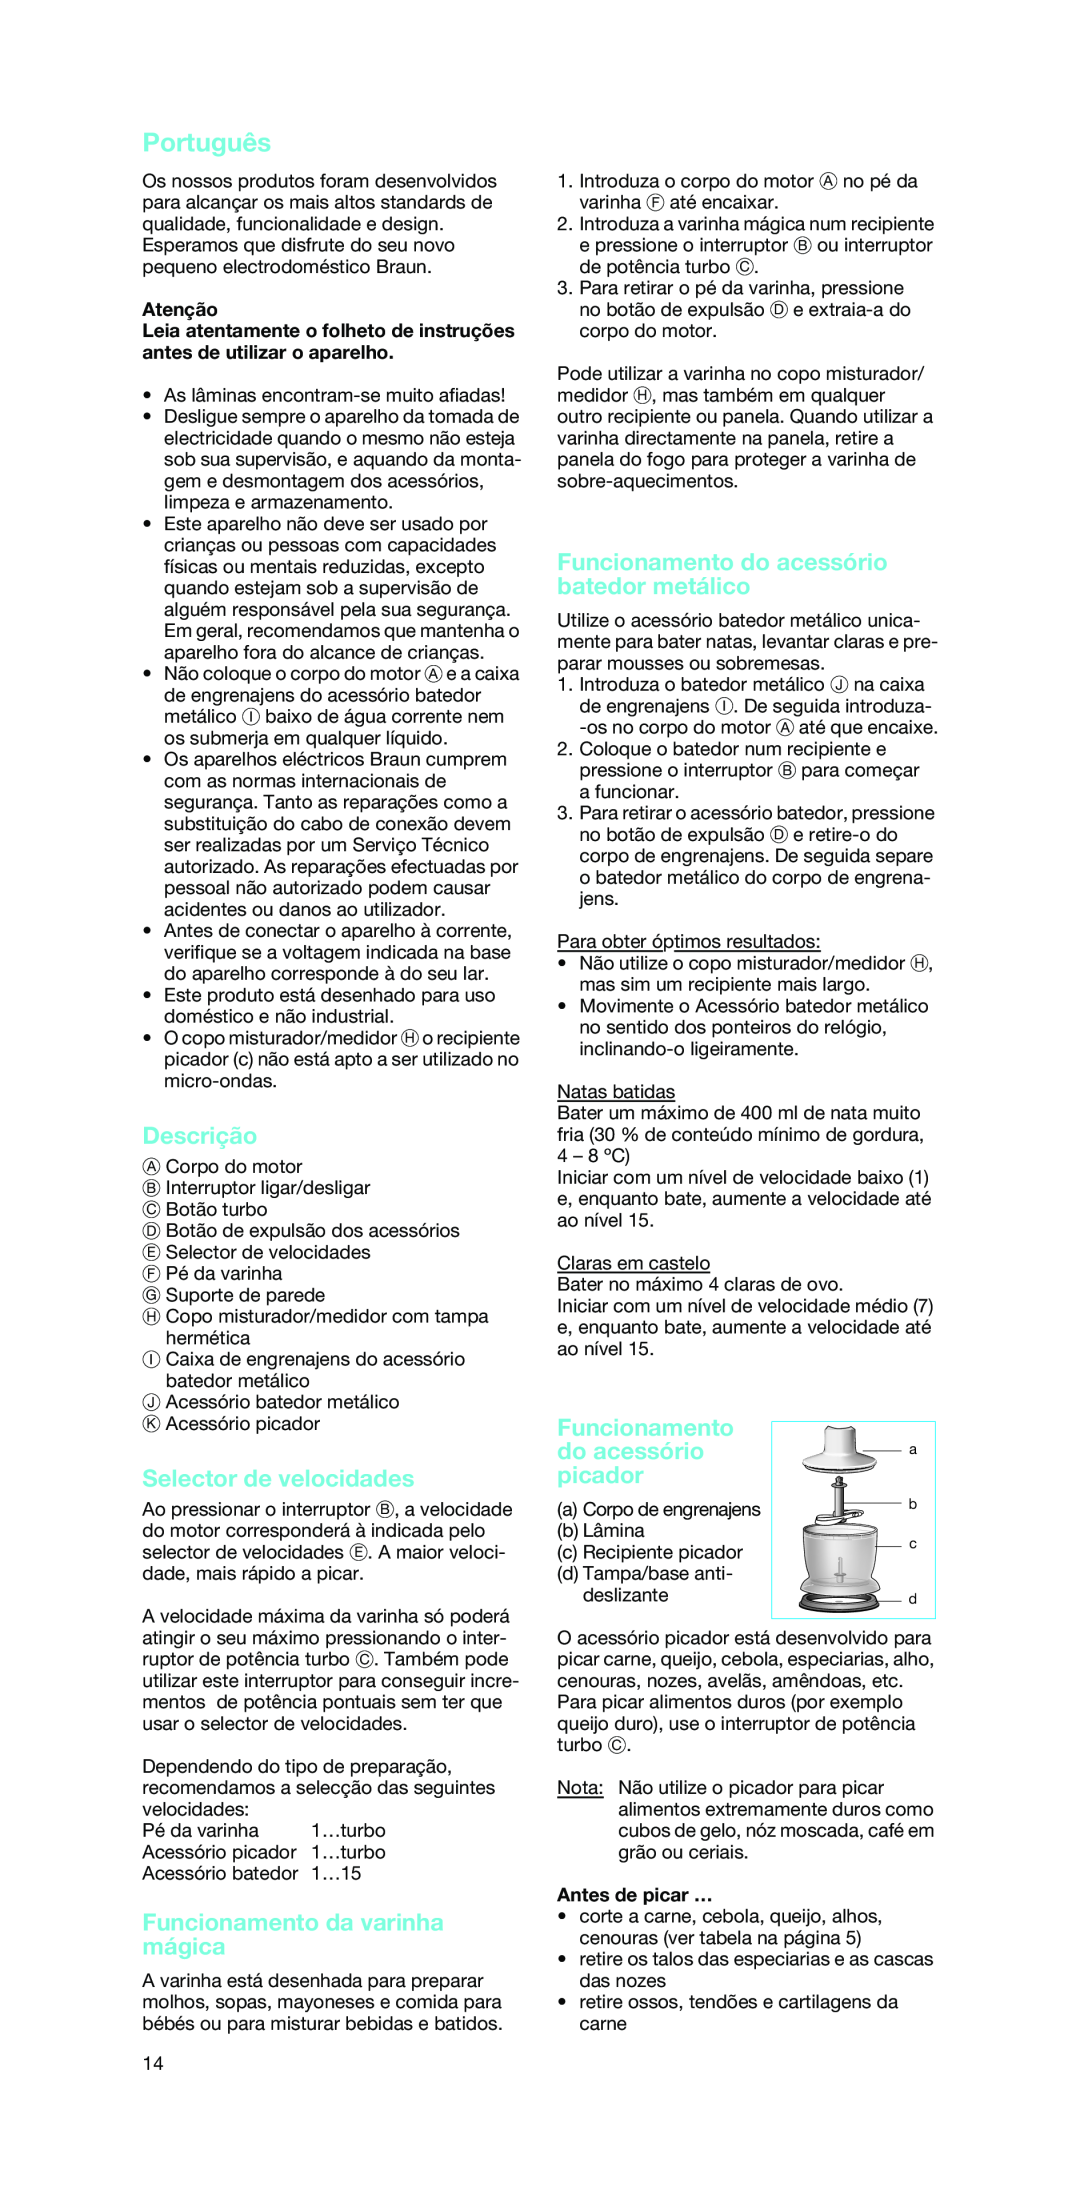 Braun MR 6500 M manual Português, Descrição, Funcionamento da varinha mágica, Funcionamento do acessório batedor metálico 